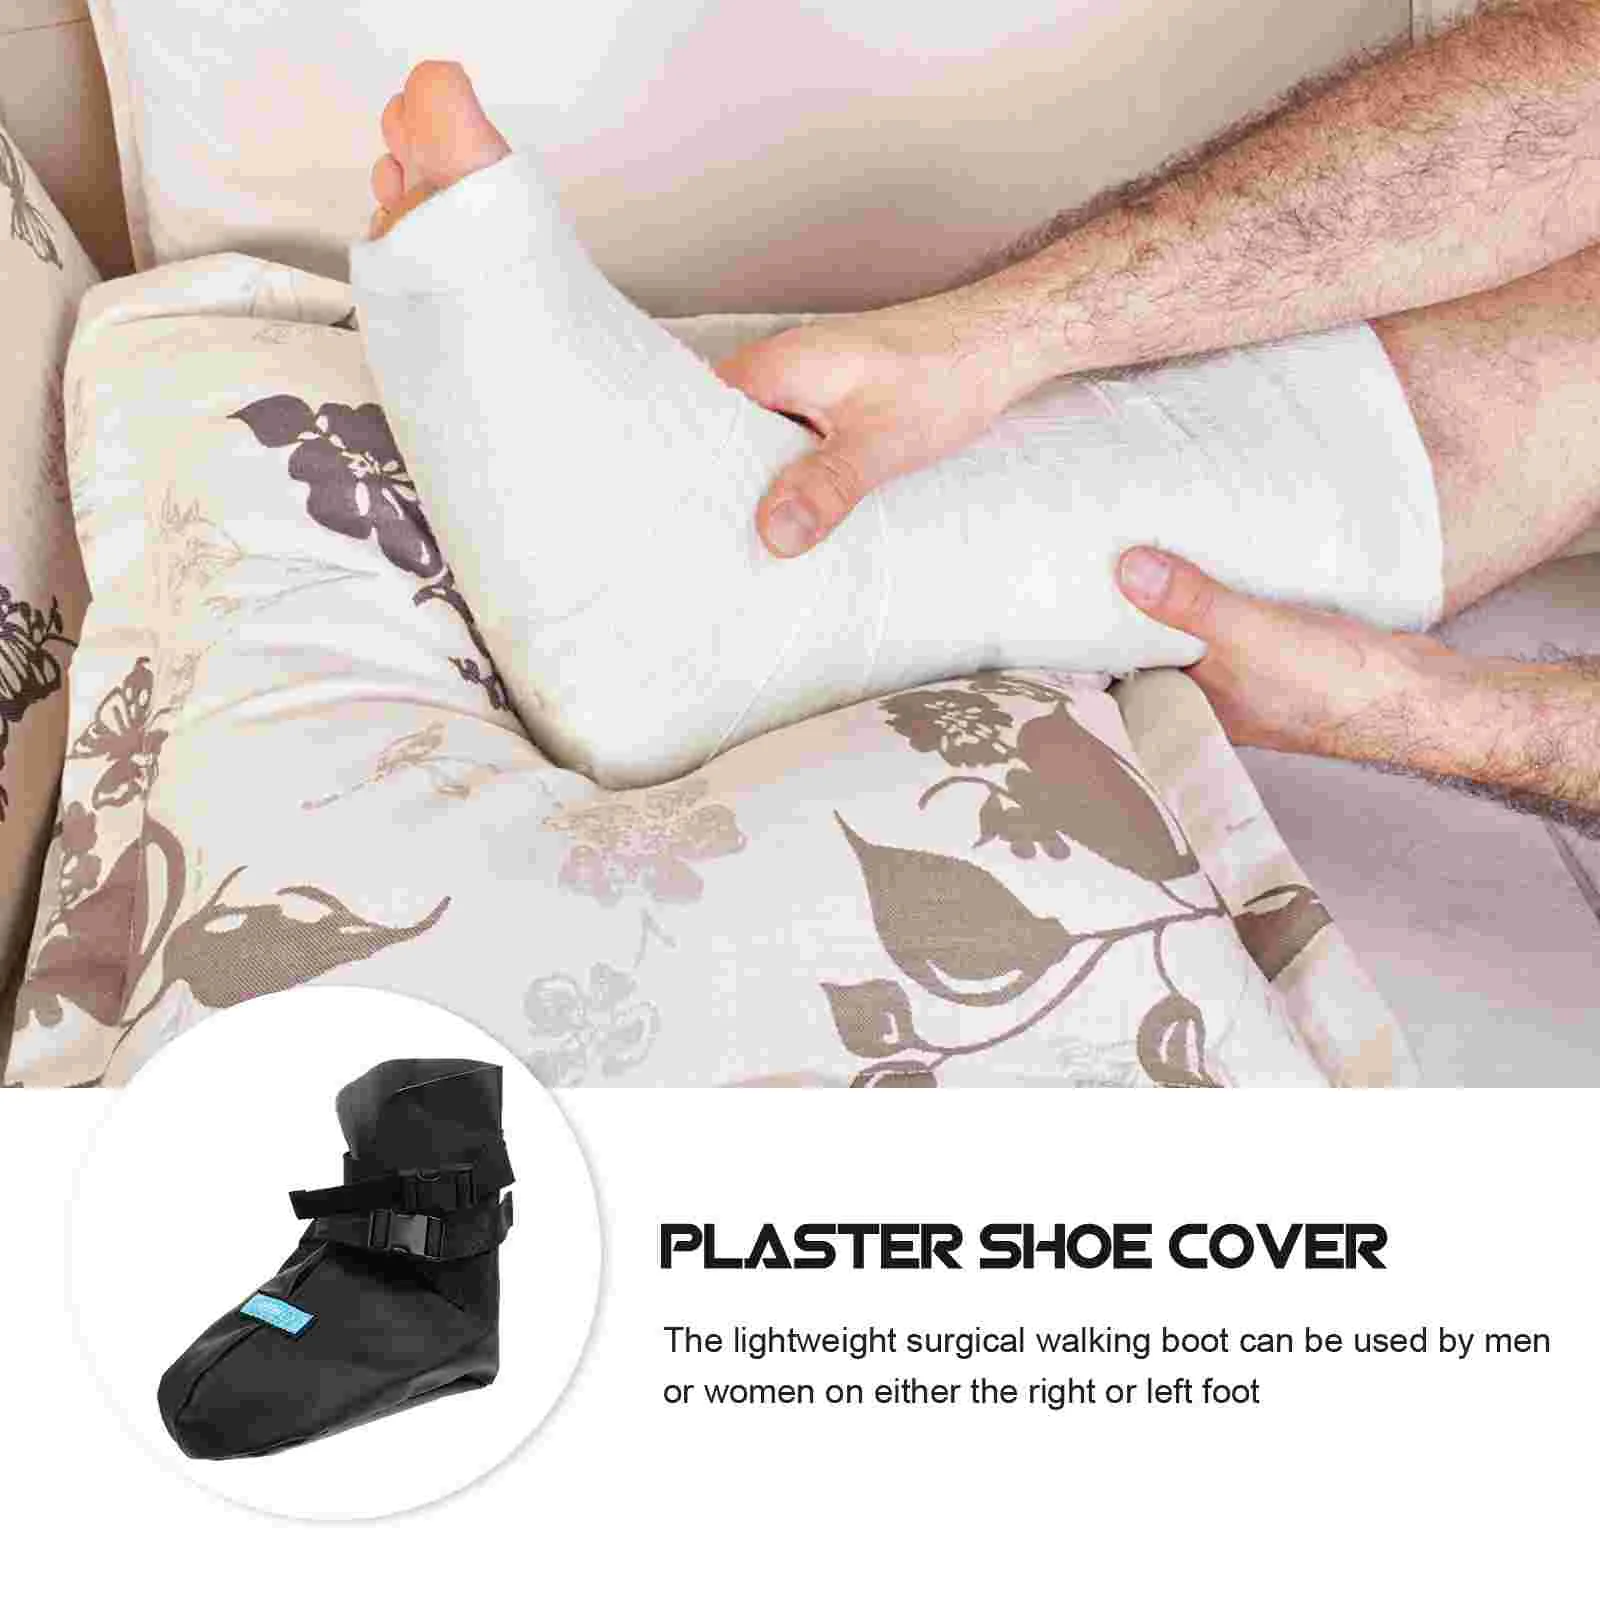 

Подошвенные носки для фасцита, при травмах ног, при переломе, литая Обложка, ортопедическая полиуретановая медицинская прогулочная обувь